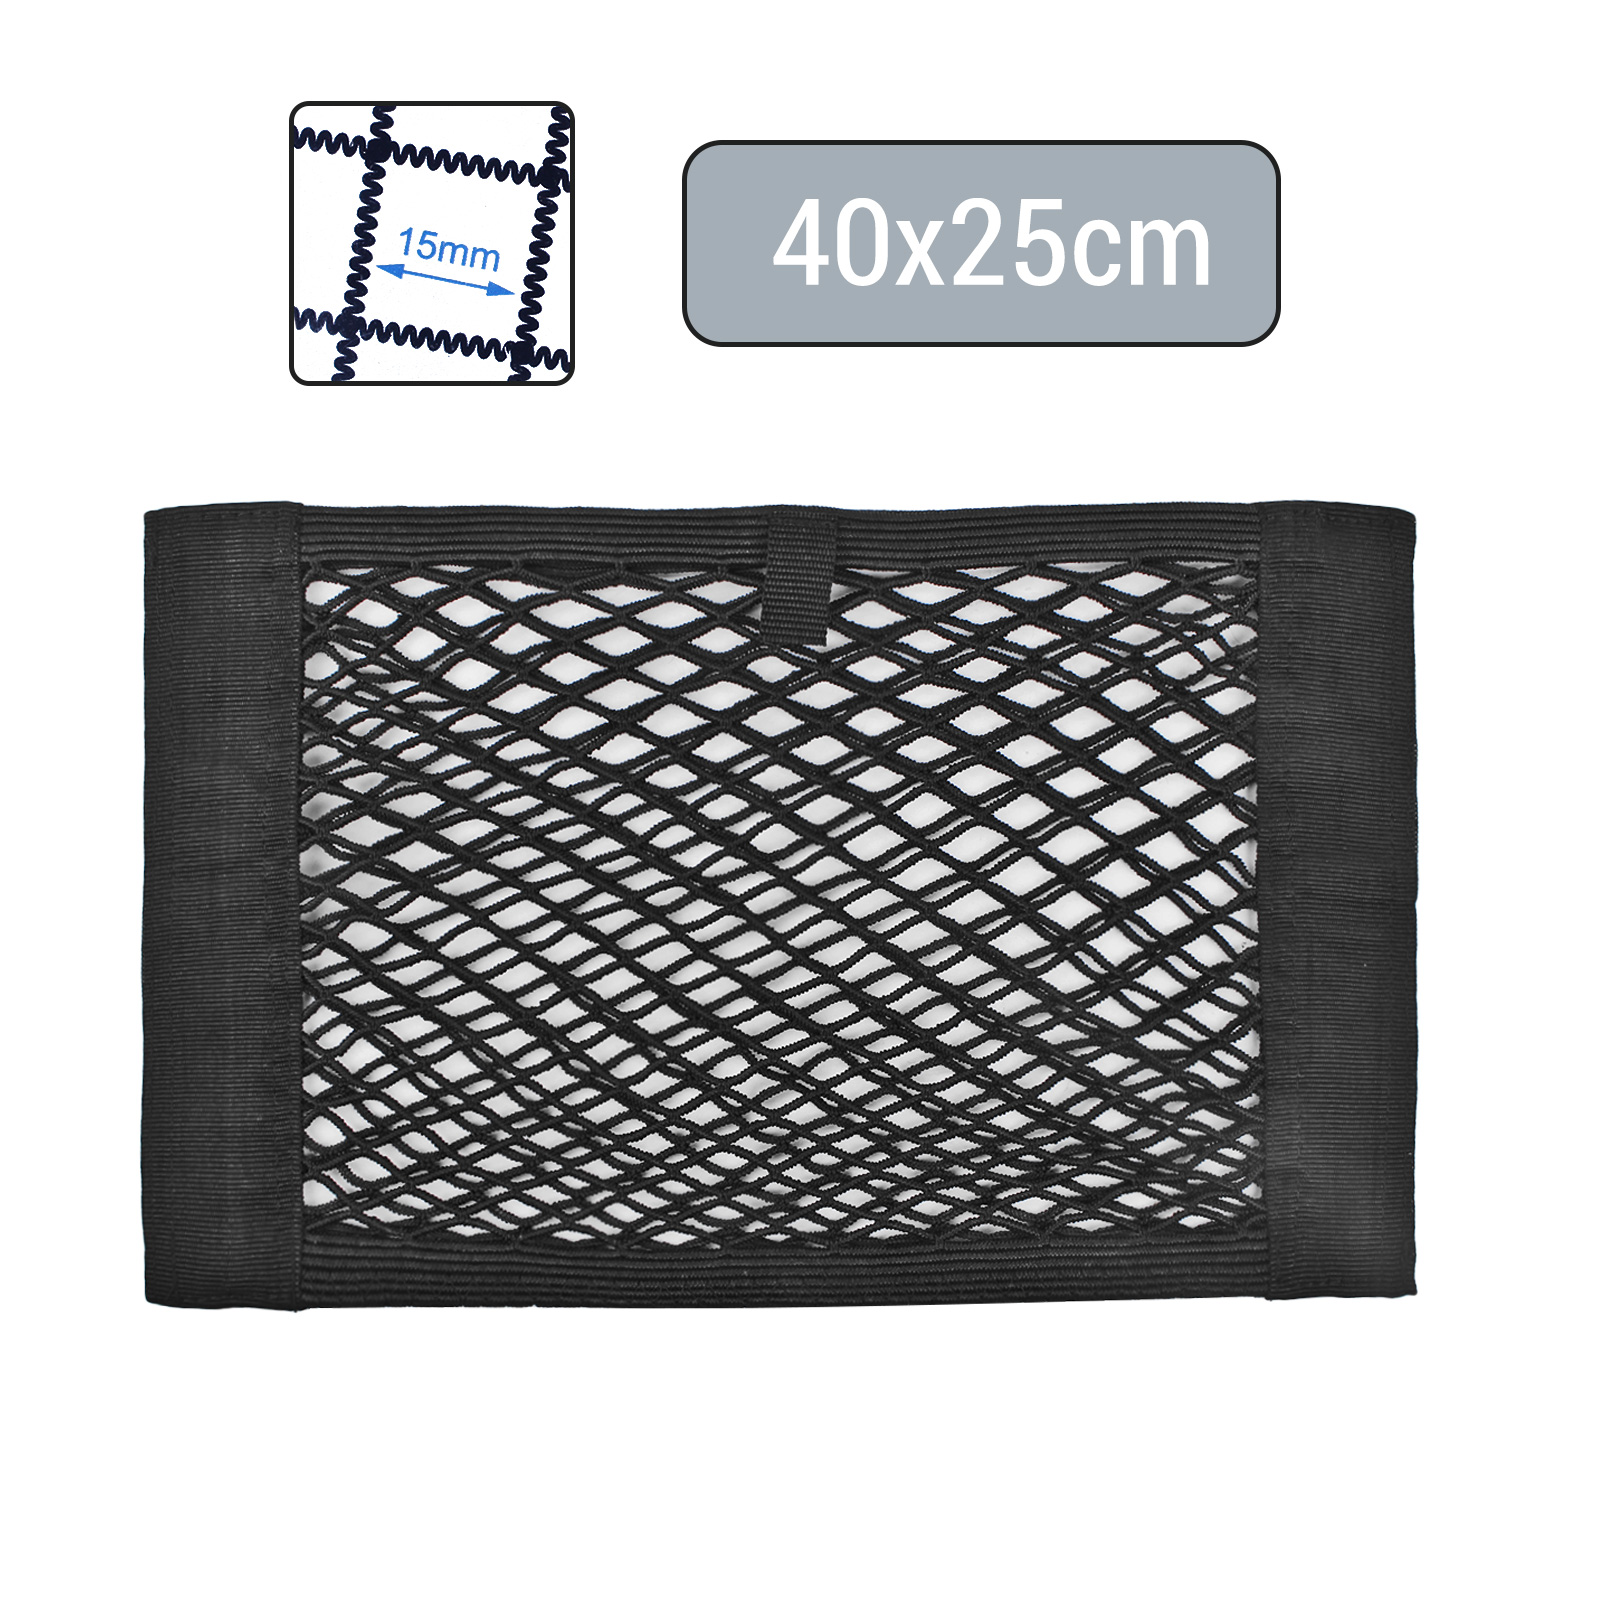 Kofferraumnetz Ablagenetz elastisch 40x25cm Klettbefestigung doppel Netz